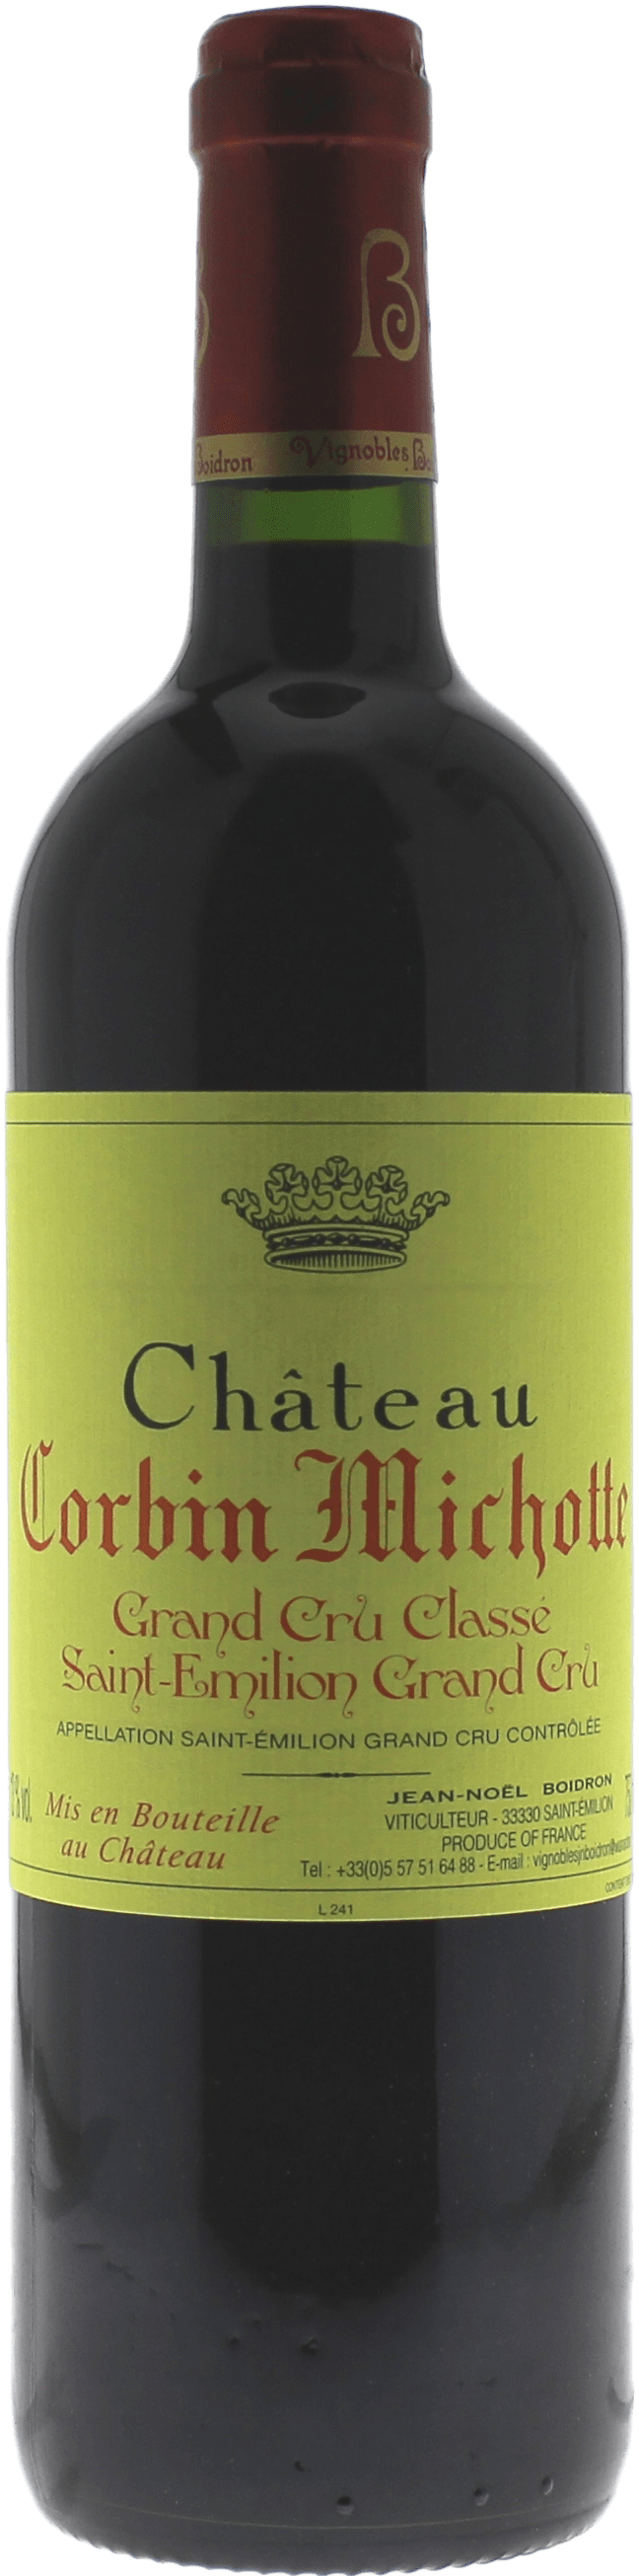 Corbin michotte 1995  Saint-Emilion, Bordeaux rouge